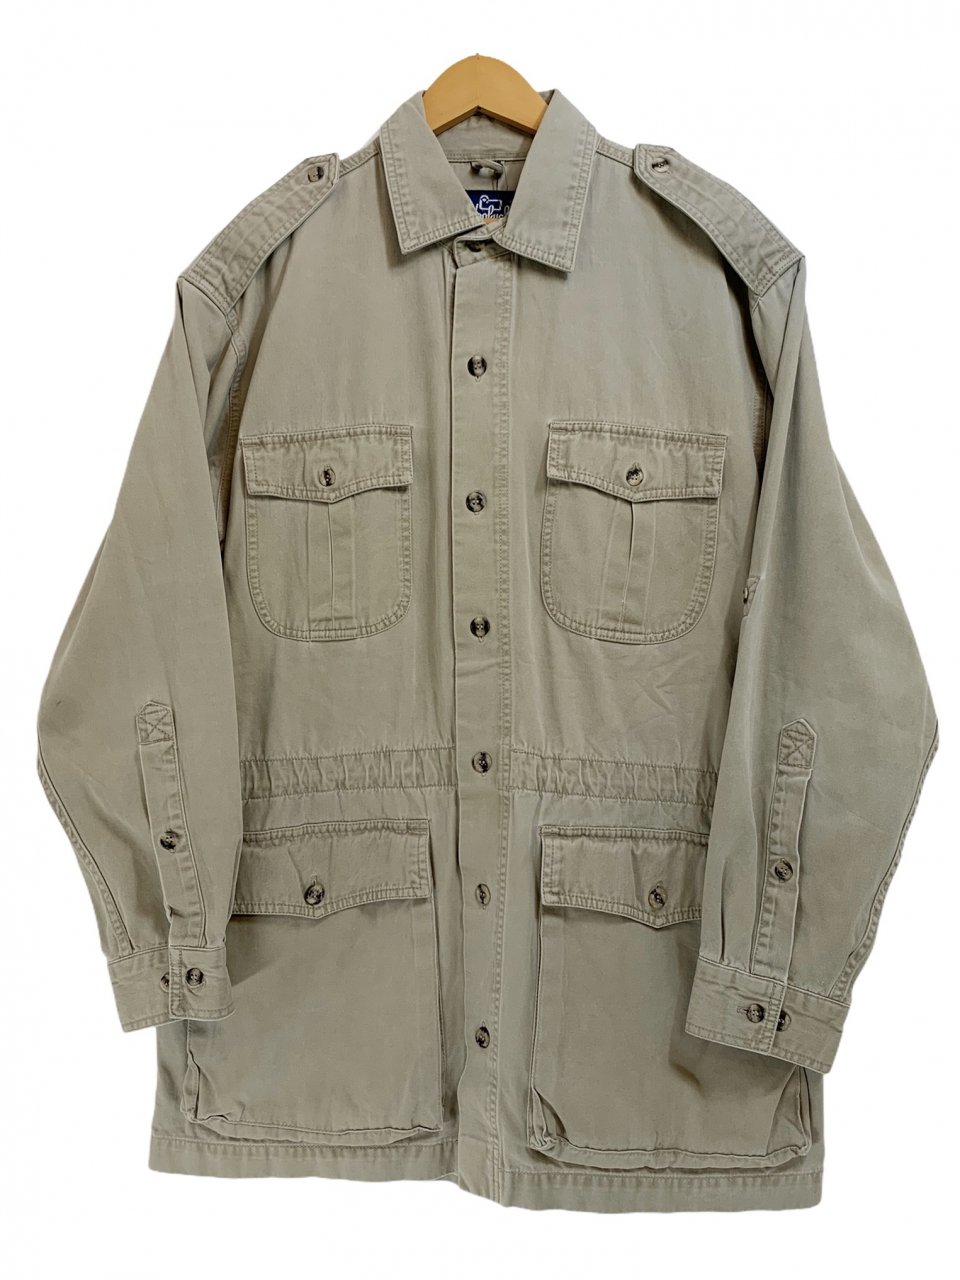 80s Woolrich Cotton L/S Safari Shirt カーキ M 紺タグ ウールリッチ